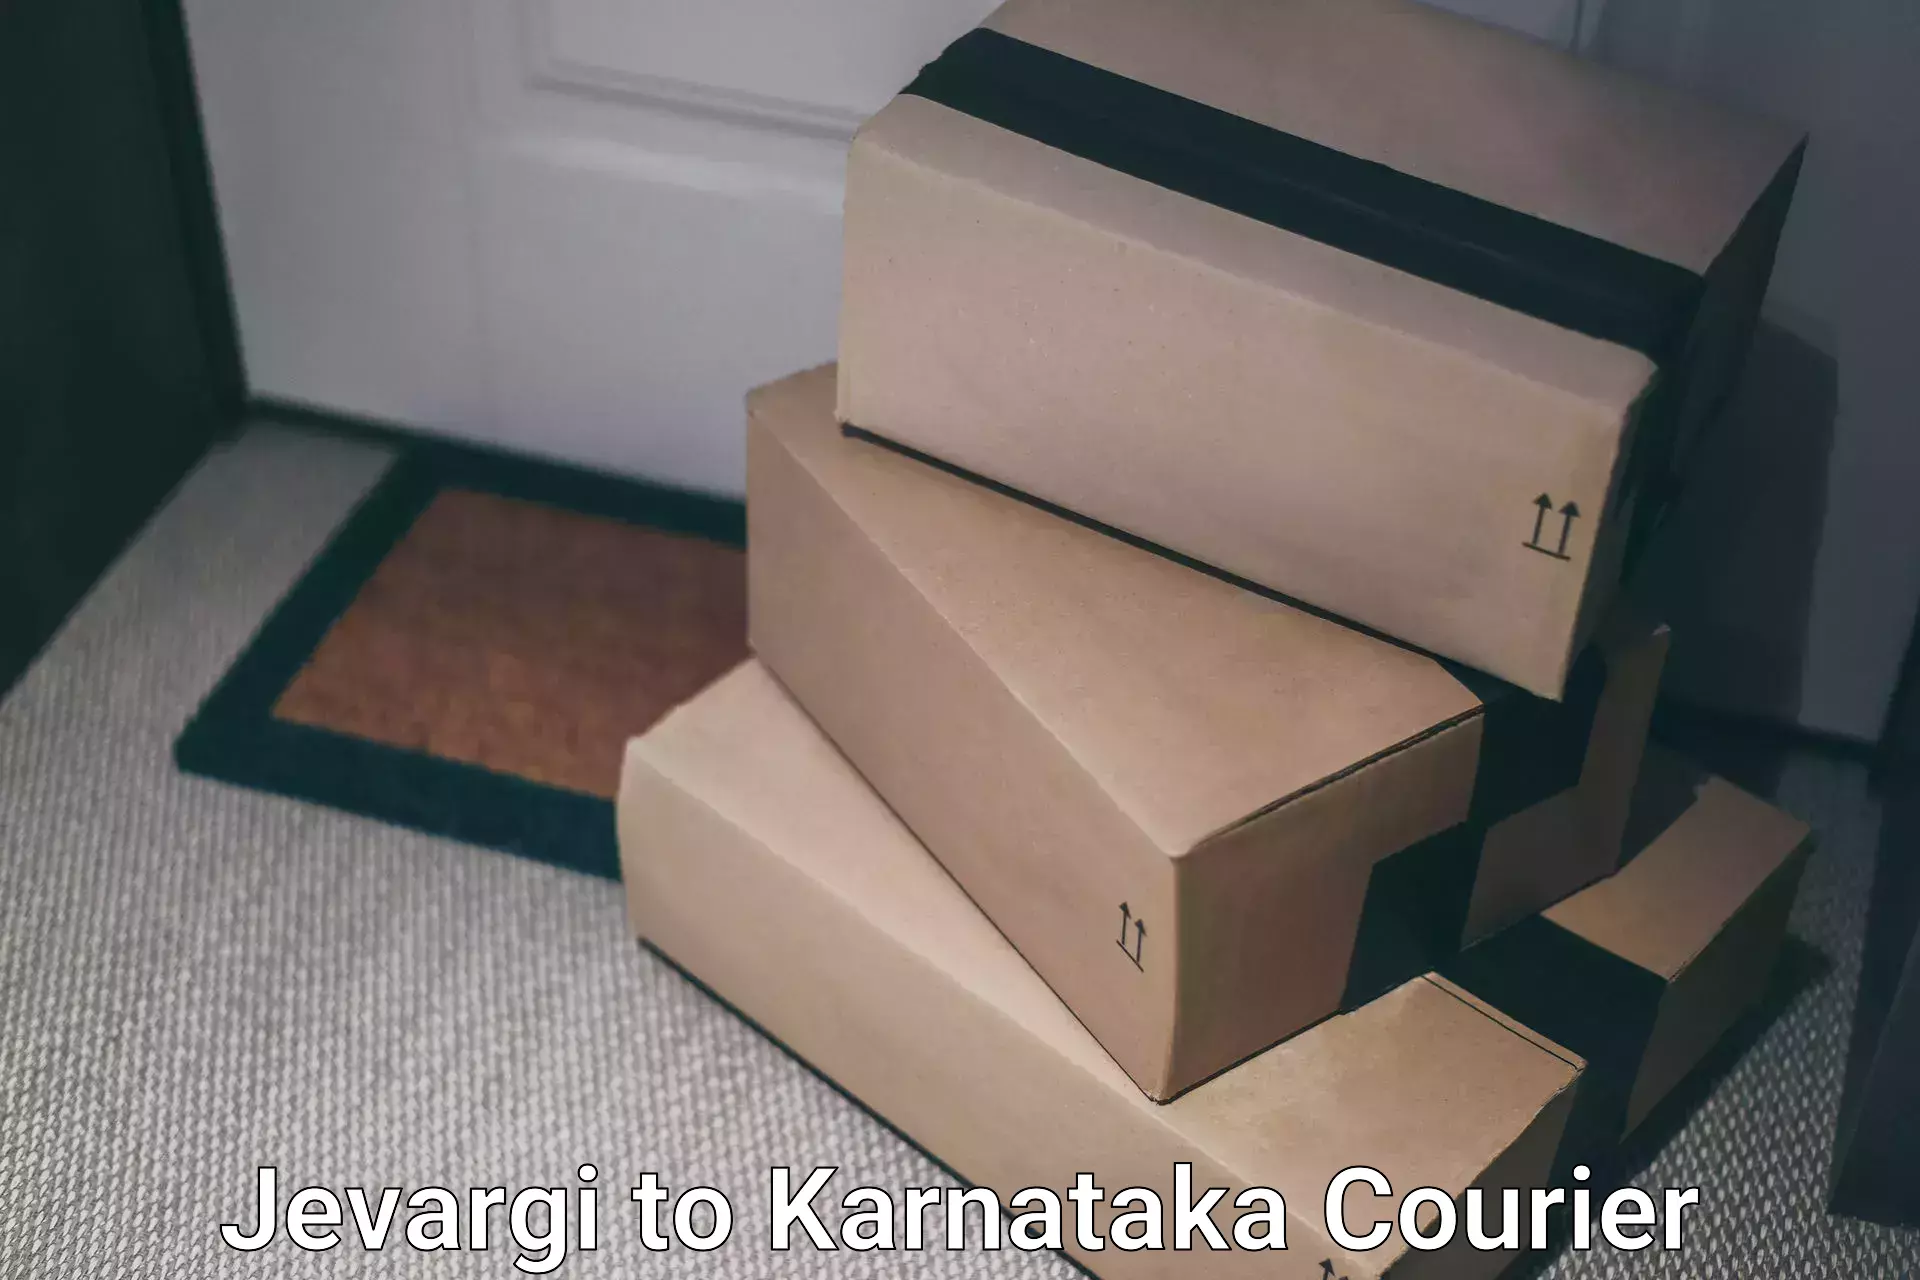 Professional courier handling Jevargi to Karnataka